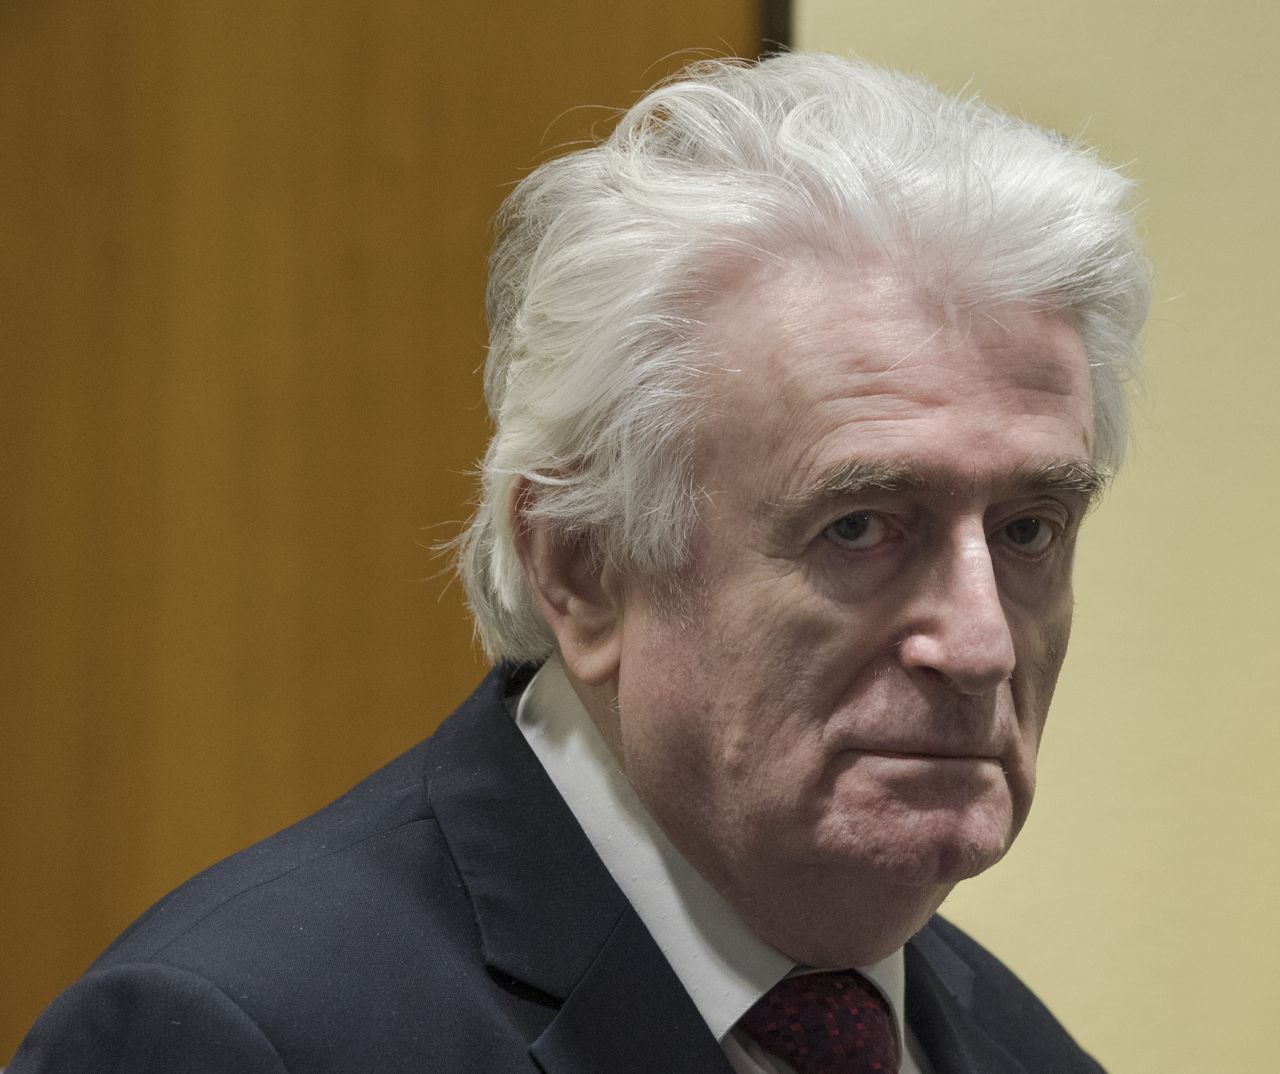 Der ehemalige Präsident von Bosnien und Herzegowina, Radovan Karadzic, wurde vom Internationalen Strafgerichtshof für das ehemalige Jugoslawien wegen Kriegsverbrechen, Völkermord und Verbrechen gegen die Menschlichkeit zu lebenslanger Haft verurteilt.